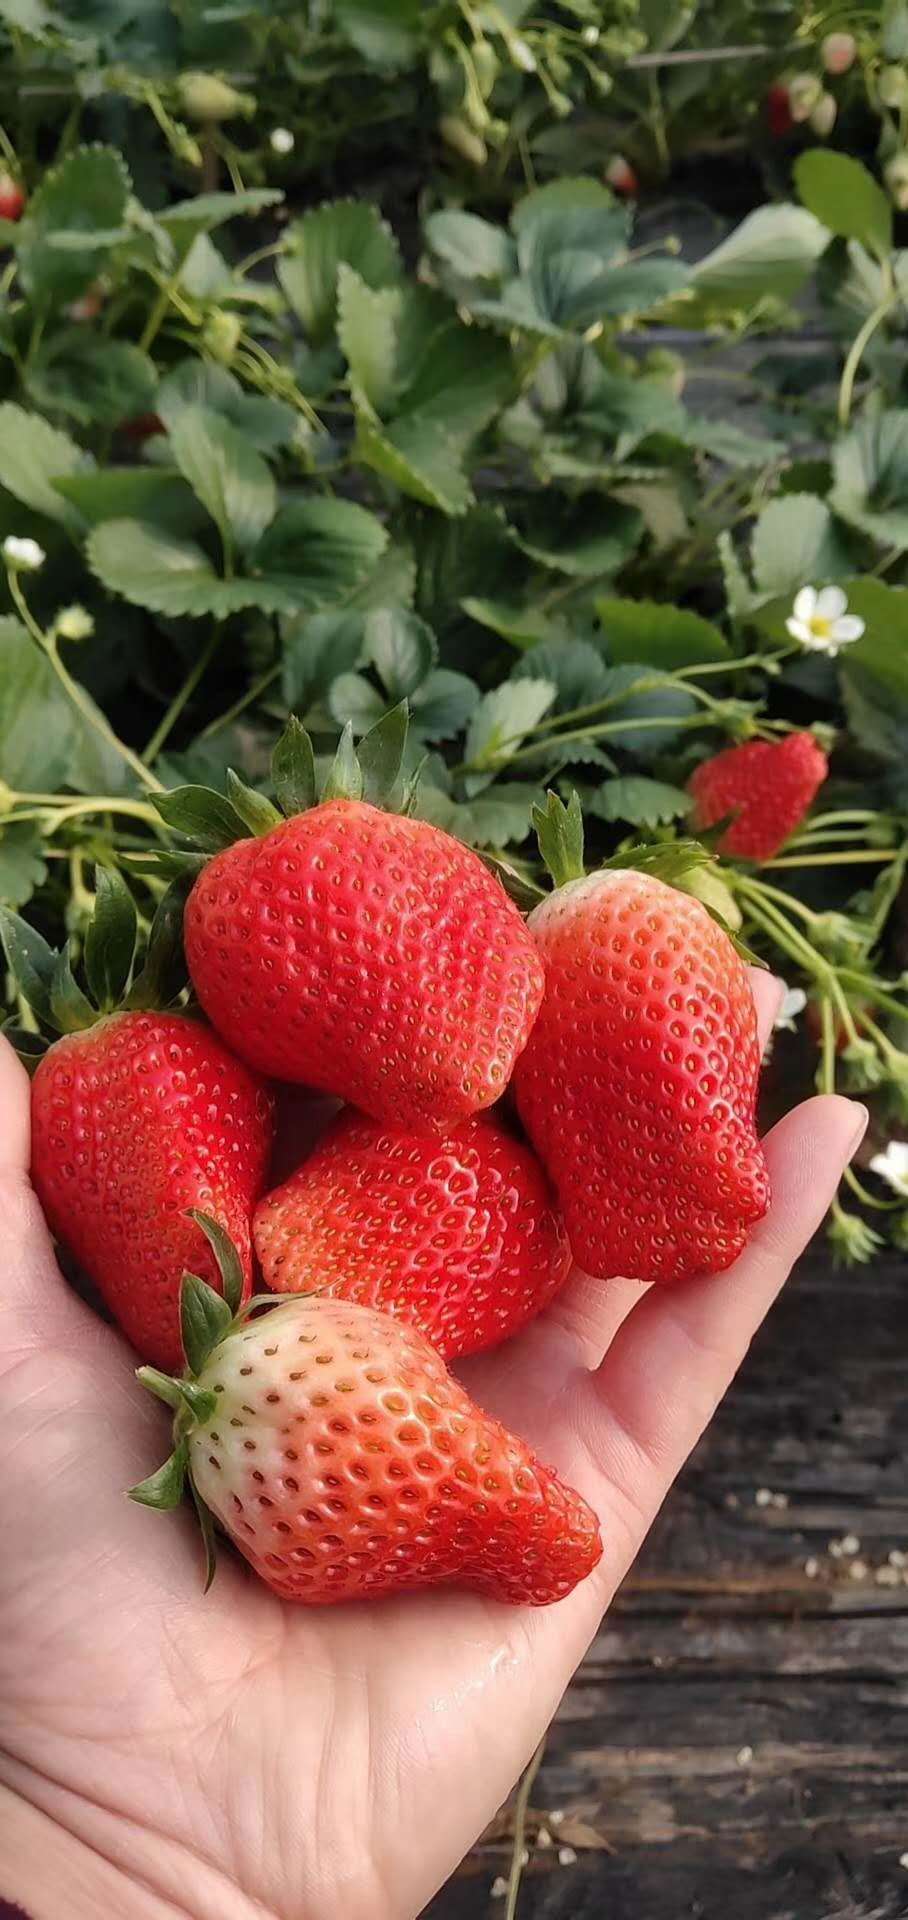 天津四季草莓苗草莓苗繁育基地草莓苗批发价格